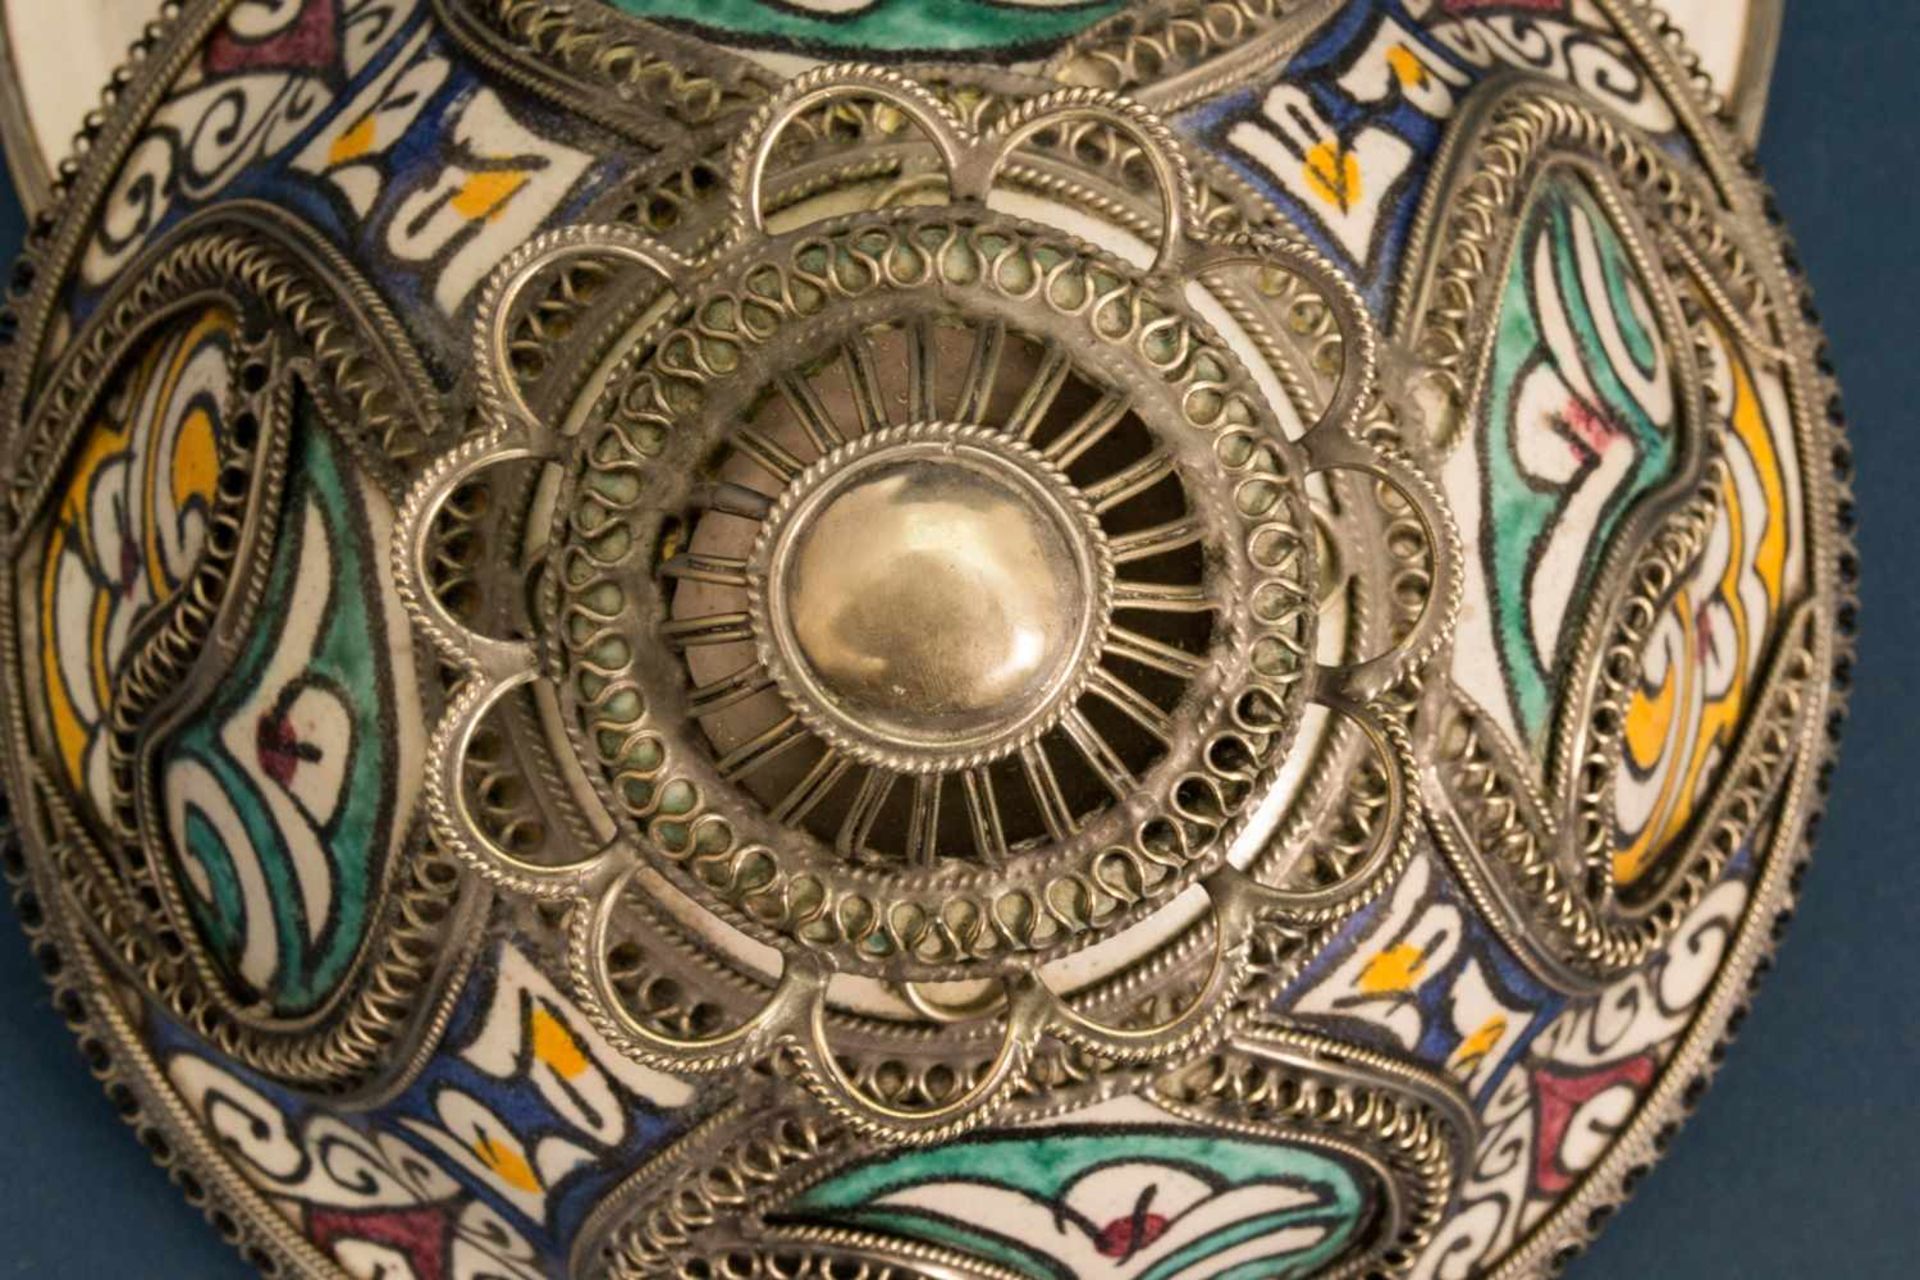 Orientalisches Deckelgefäß, polychrom staffierte, glasierte Keramik mit aufwändig gestaltetem, - Bild 11 aus 16